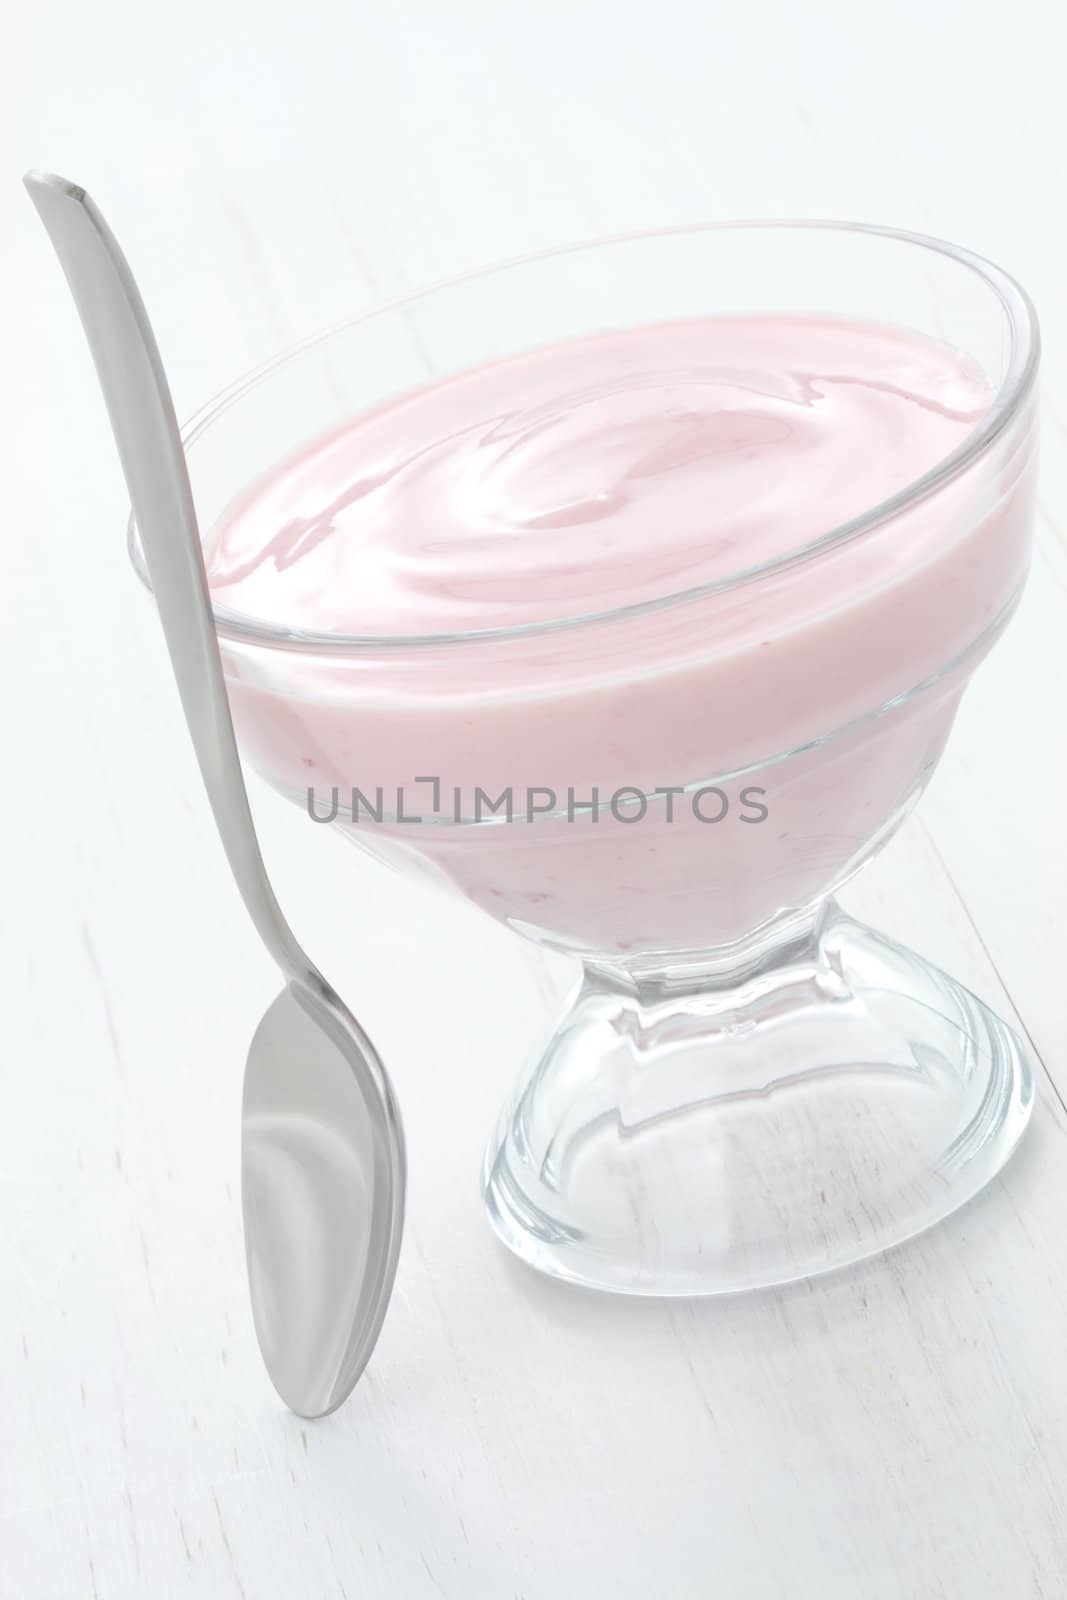 Fresh strawberry yogurt by tacar